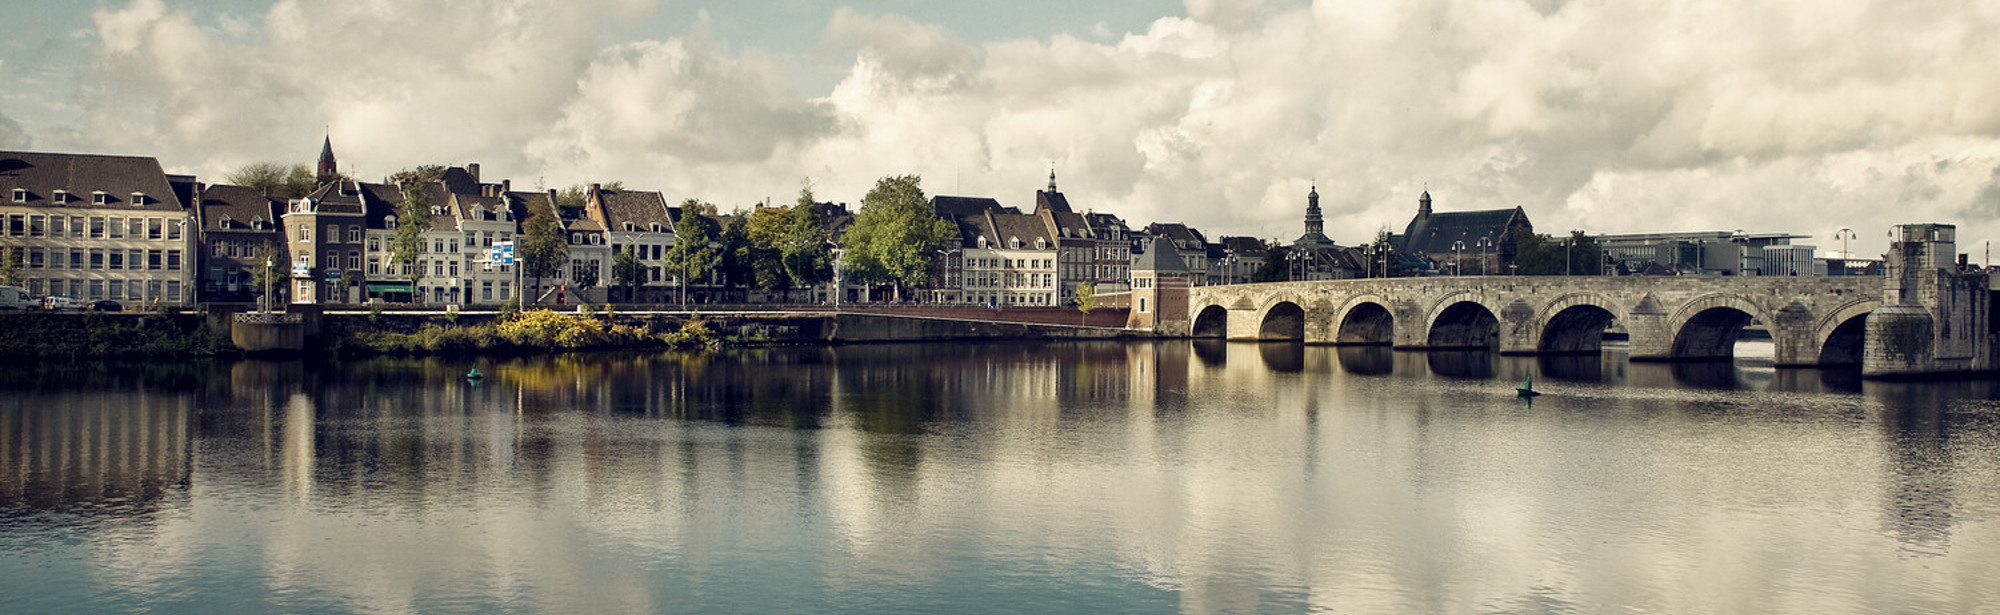 Zicht op de Maas en de Sint Servaasbrug Maastricht